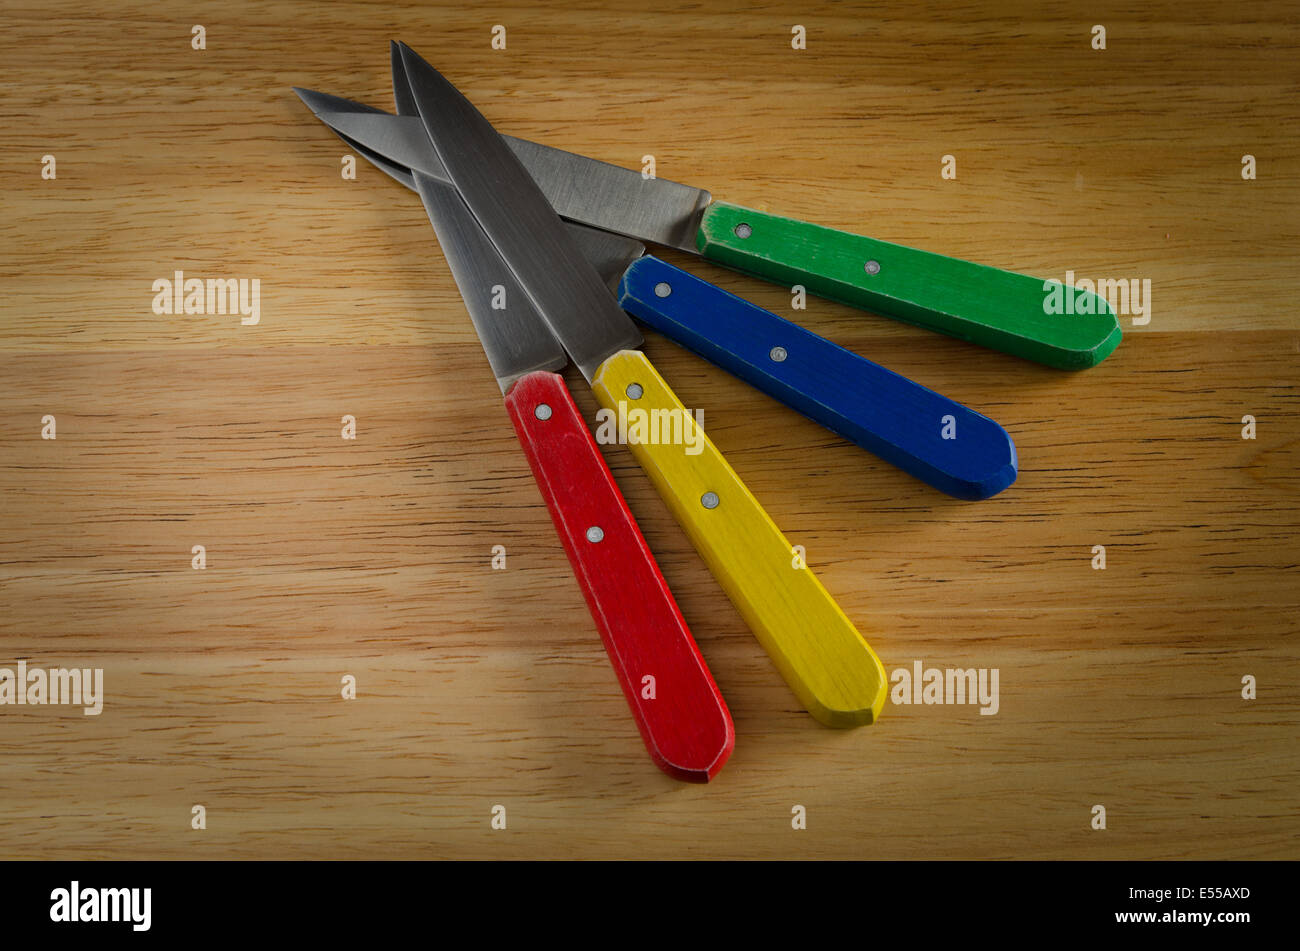 Couteaux sur bois, rouge, jaune, bleu, vert Banque D'Images